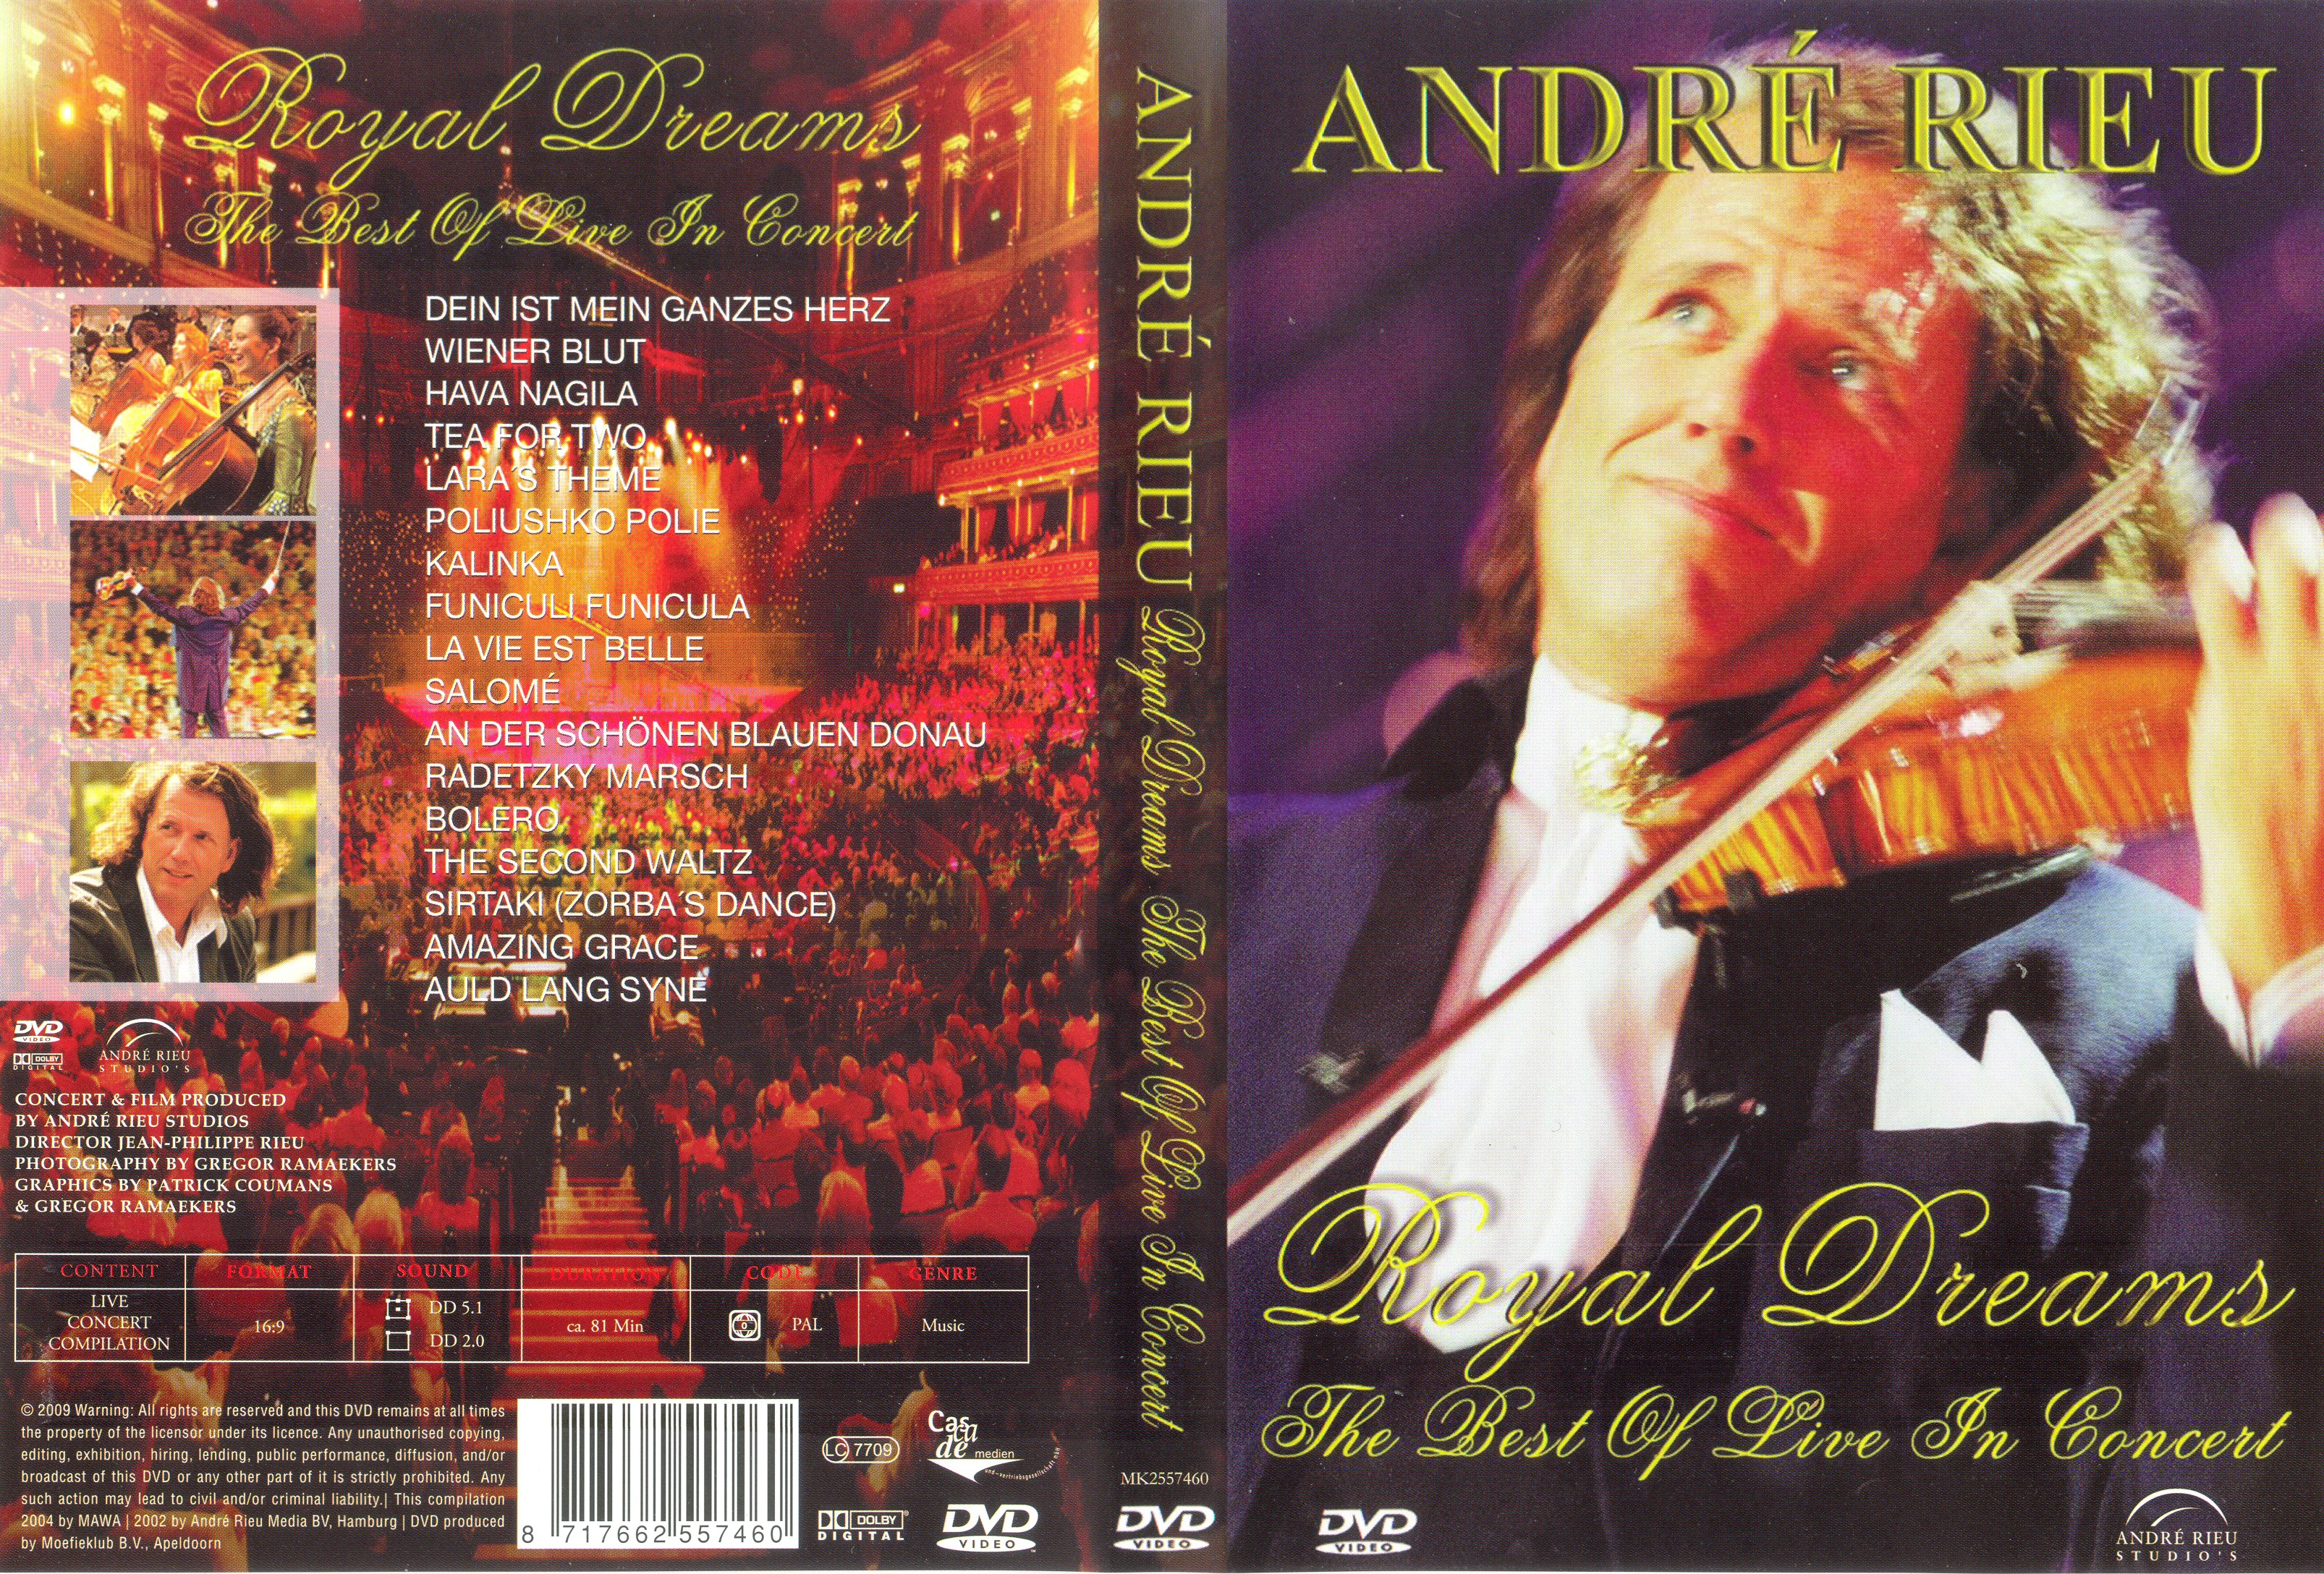 Jaquette DVD Andre Rieu Royal Dreams